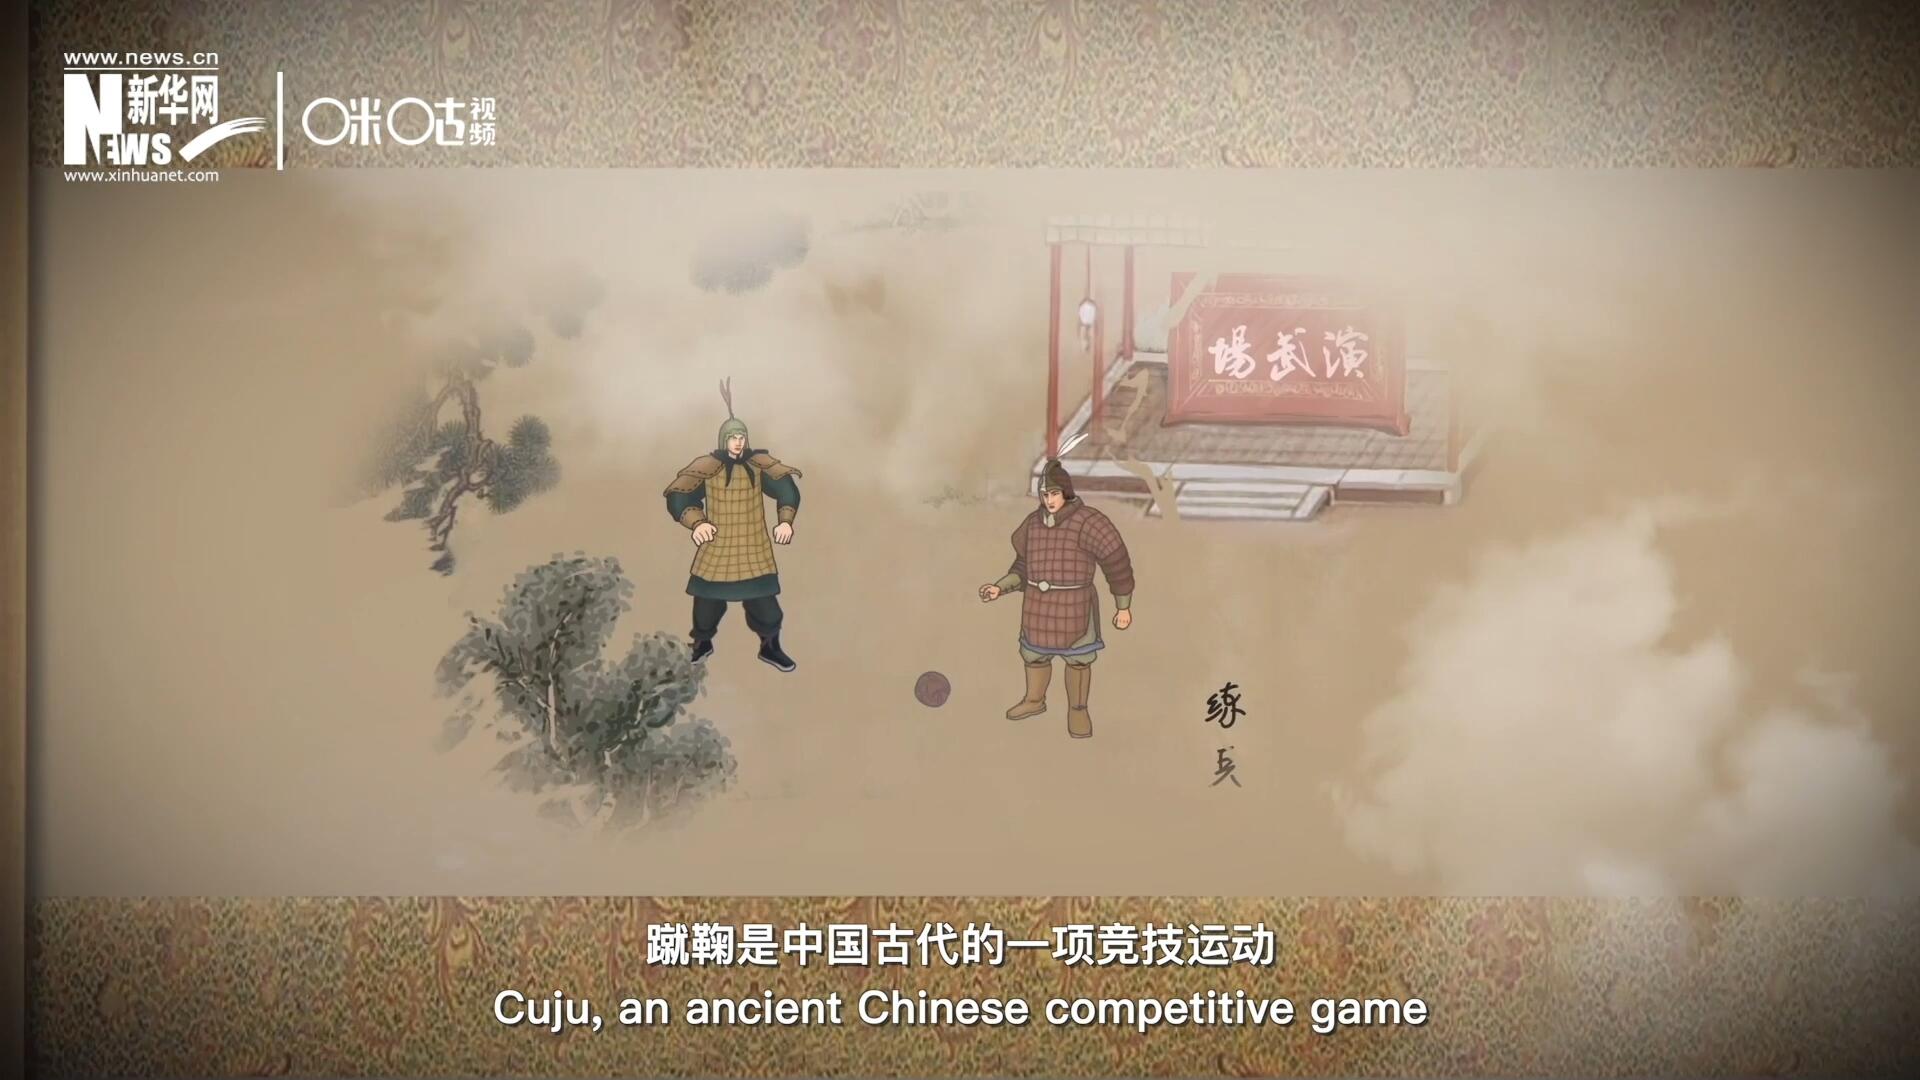 蹴鞠是中國古代的一項競技運動，其發明之初是用來練兵